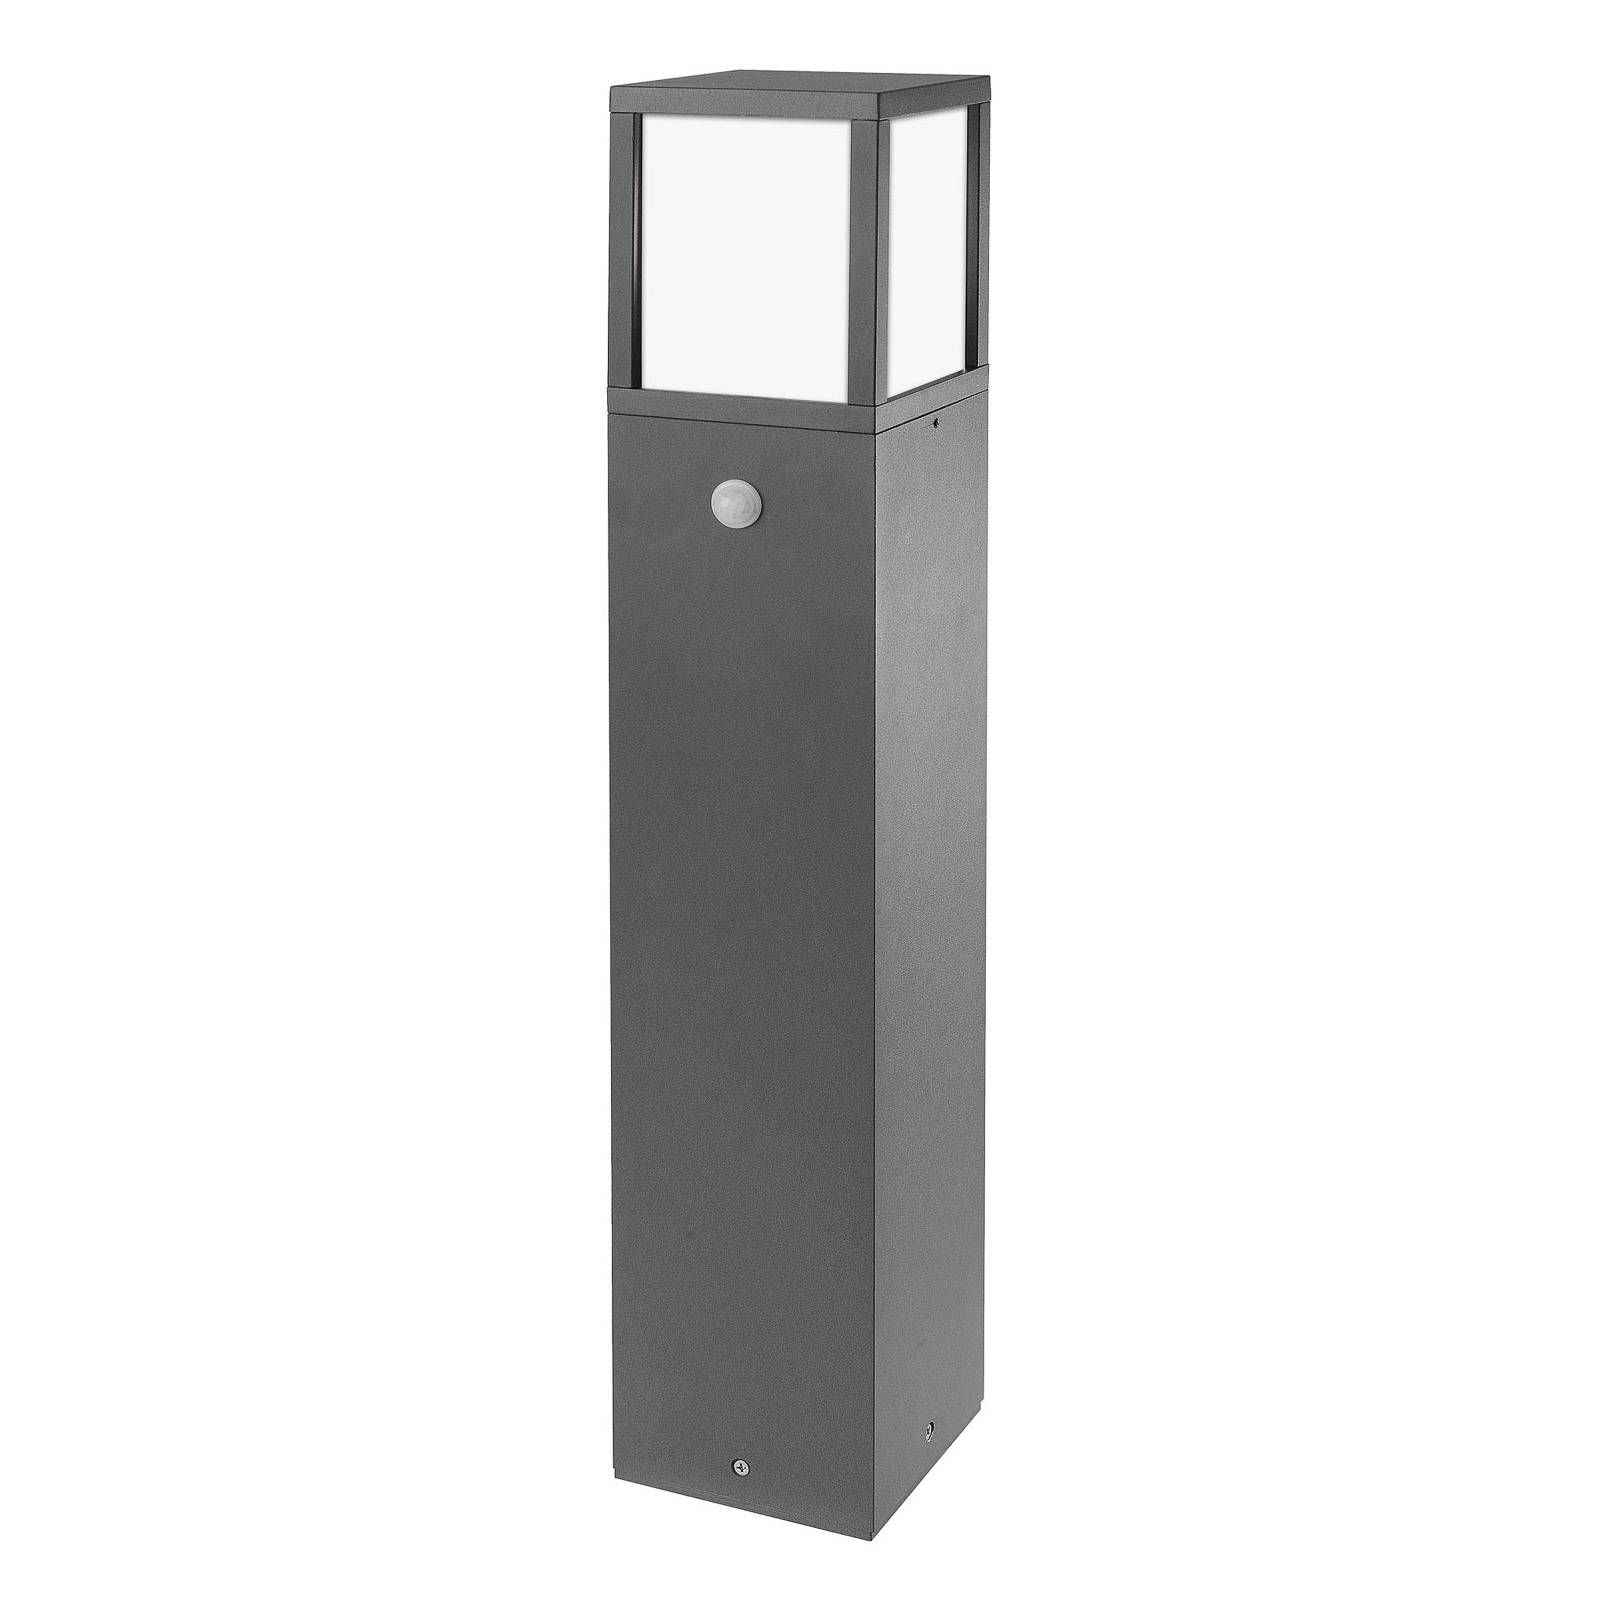 CMD Chodníková lampa 9018 s detektorom pohybu, hliník, opálové sklo, E27, 15W, P: 12 cm, L: 12 cm, K: 65cm